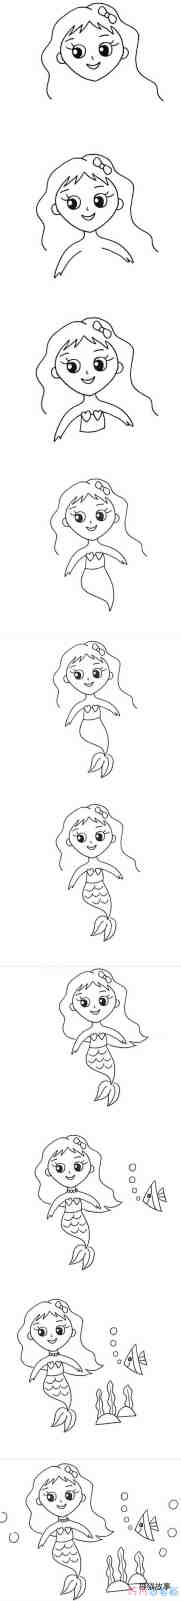 绘本故事一步一步画美人鱼简笔画教程 卡通美人鱼怎么画简单漂亮